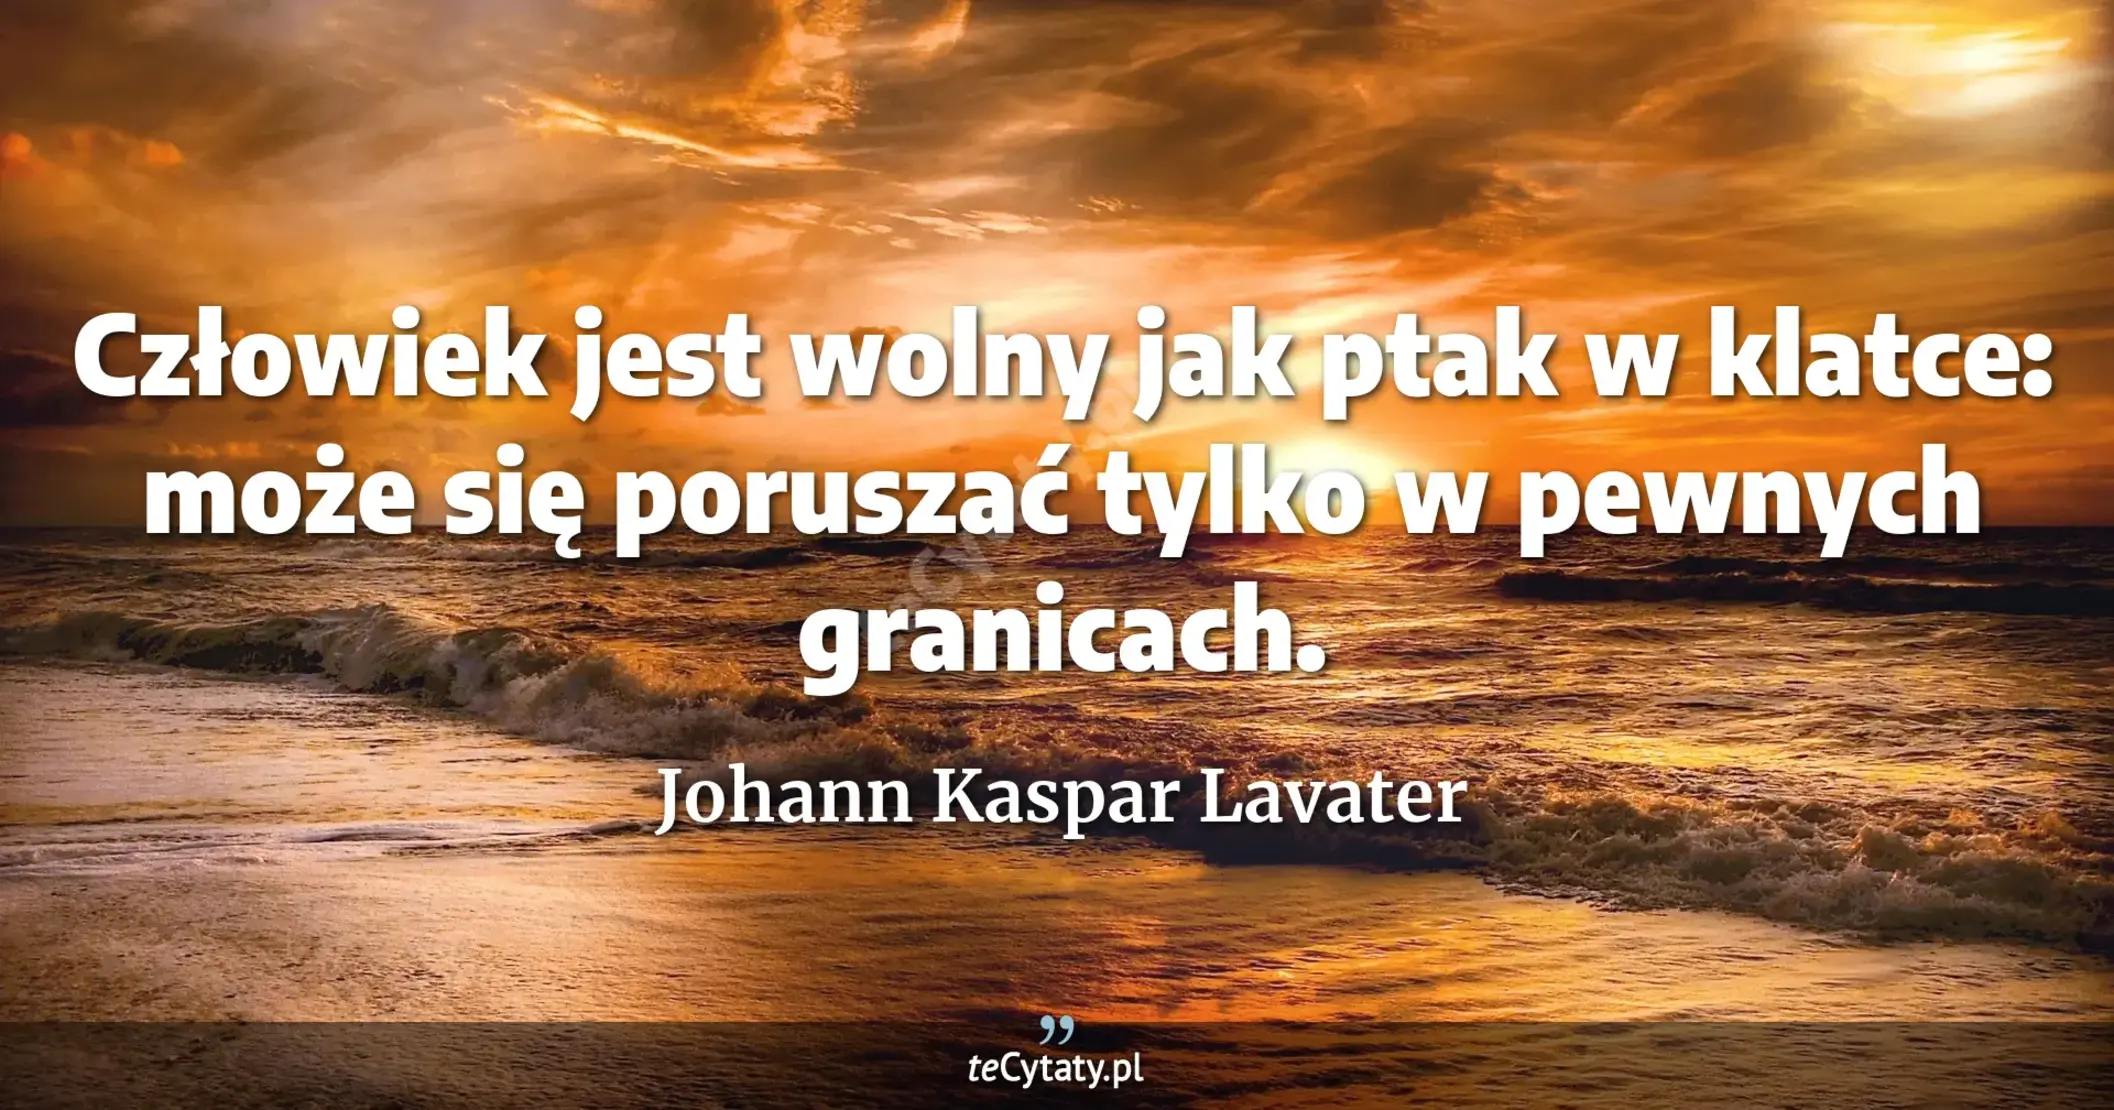 Człowiek jest wolny jak ptak w klatce: może się poruszać tylko w pewnych granicach. - Johann Kaspar Lavater